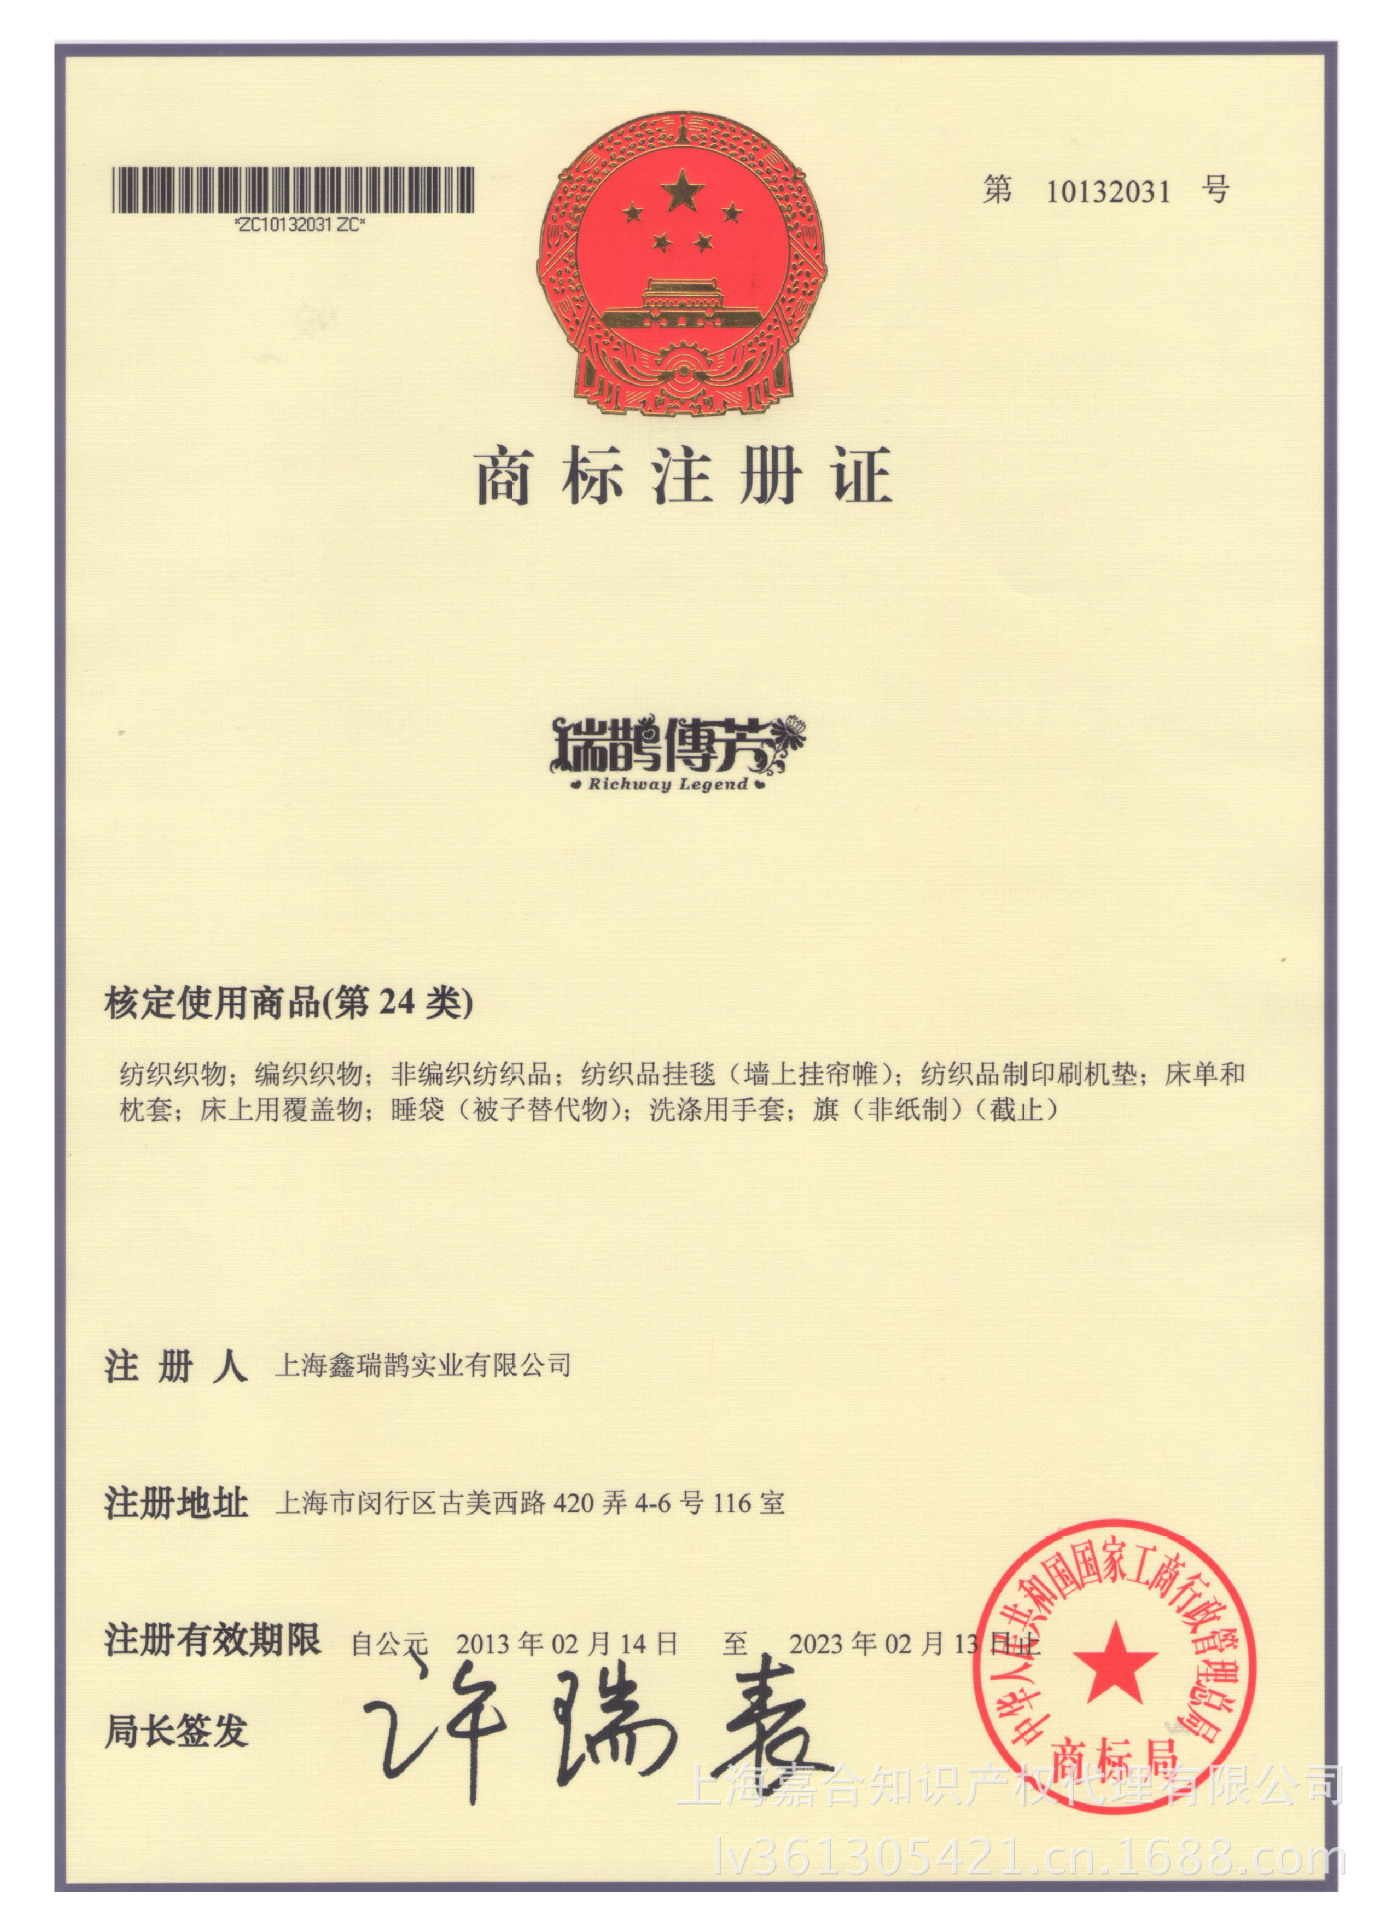 知识产权-上海商标申请 人民日报 国家工商总局